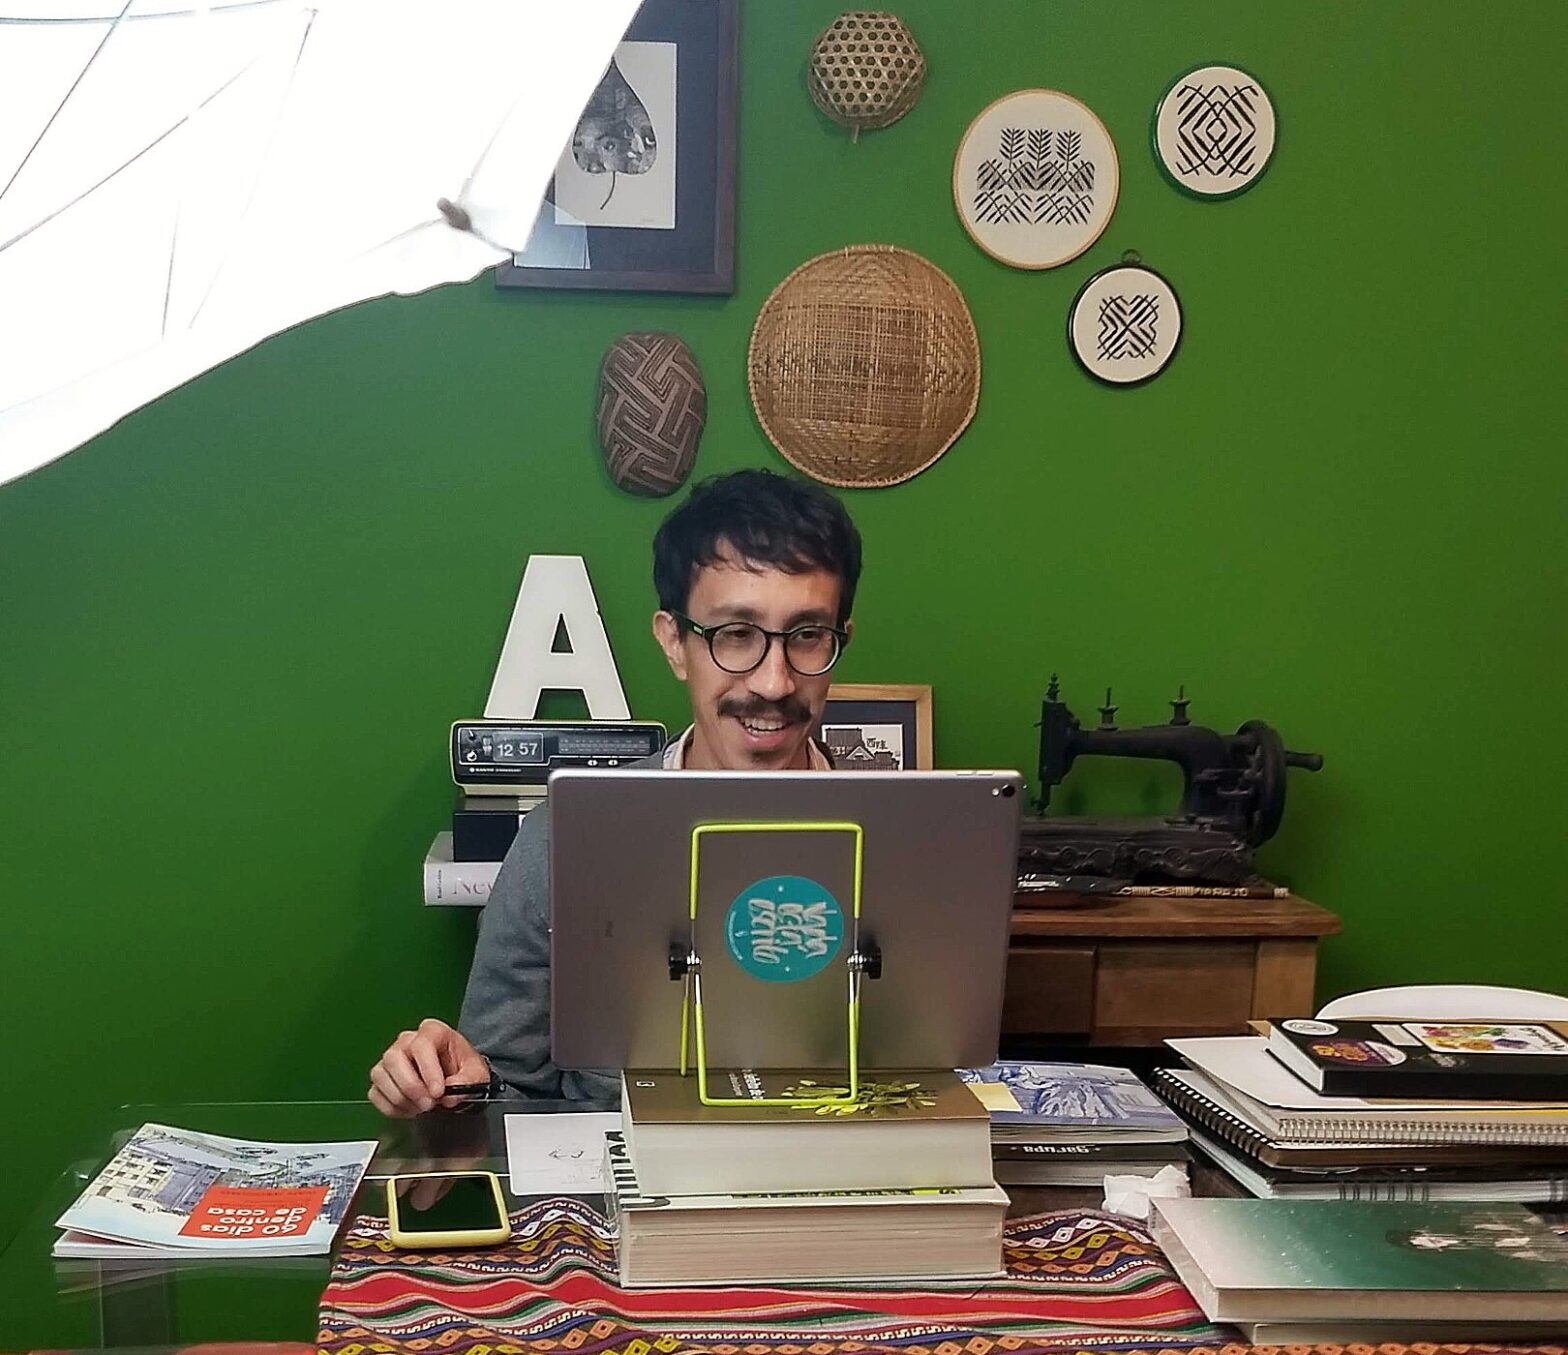 Foto do autor sentado em uma mesa, em frente a um tablet, cercado por cadernos, com uma parede verde ao fundo, onde estão pendurados bordados e objetos indígenas